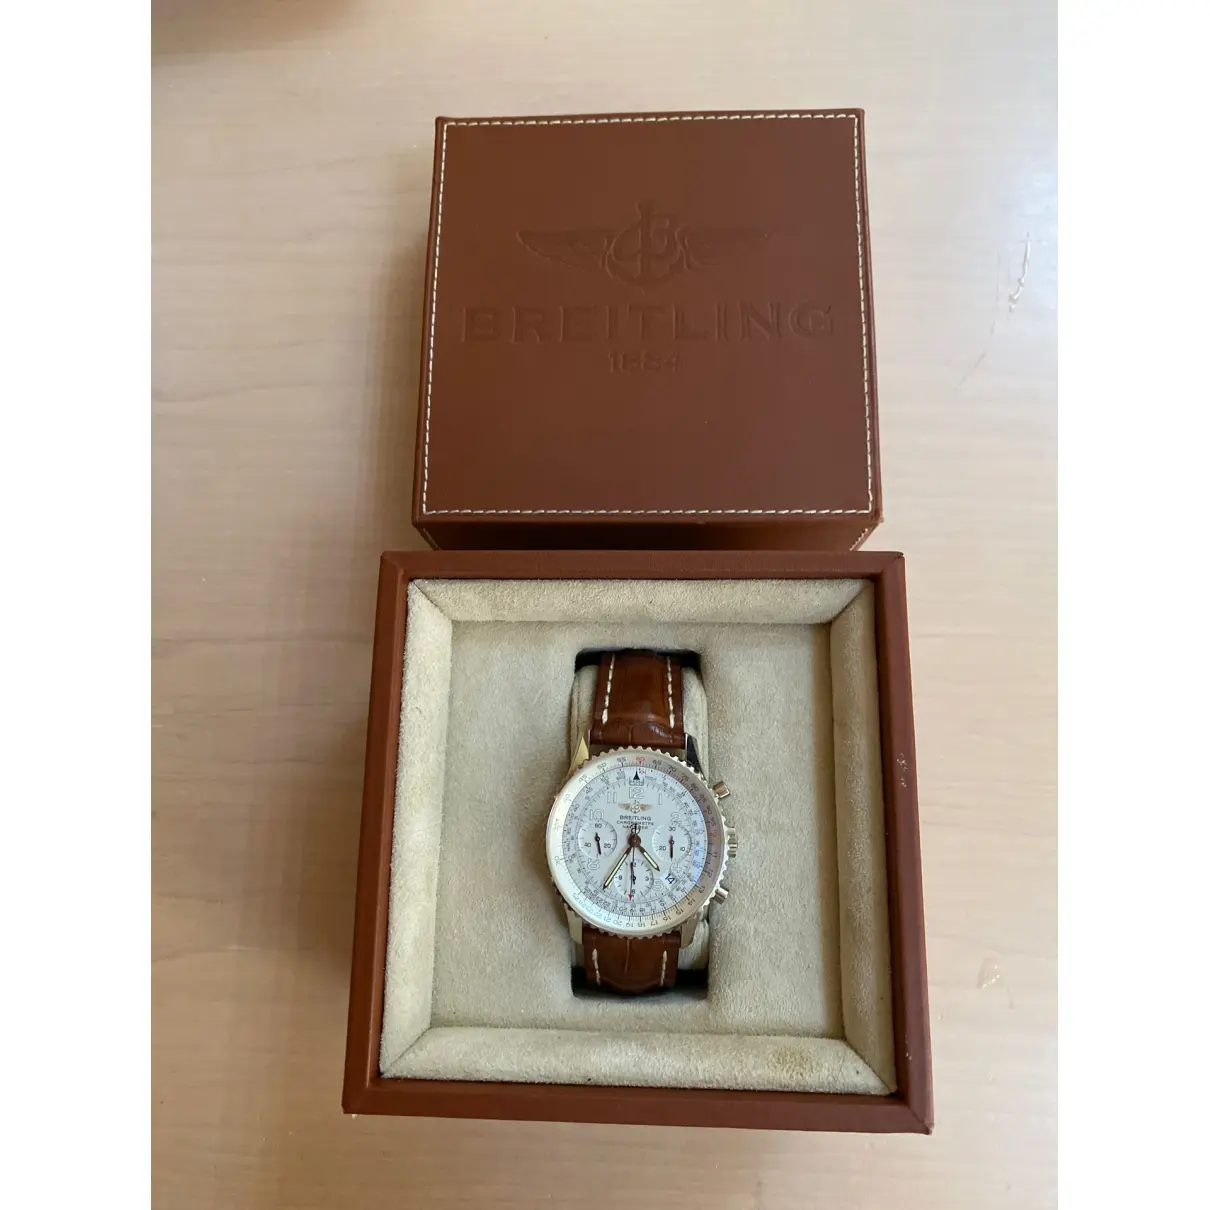 Luxury Breitling Watches Men